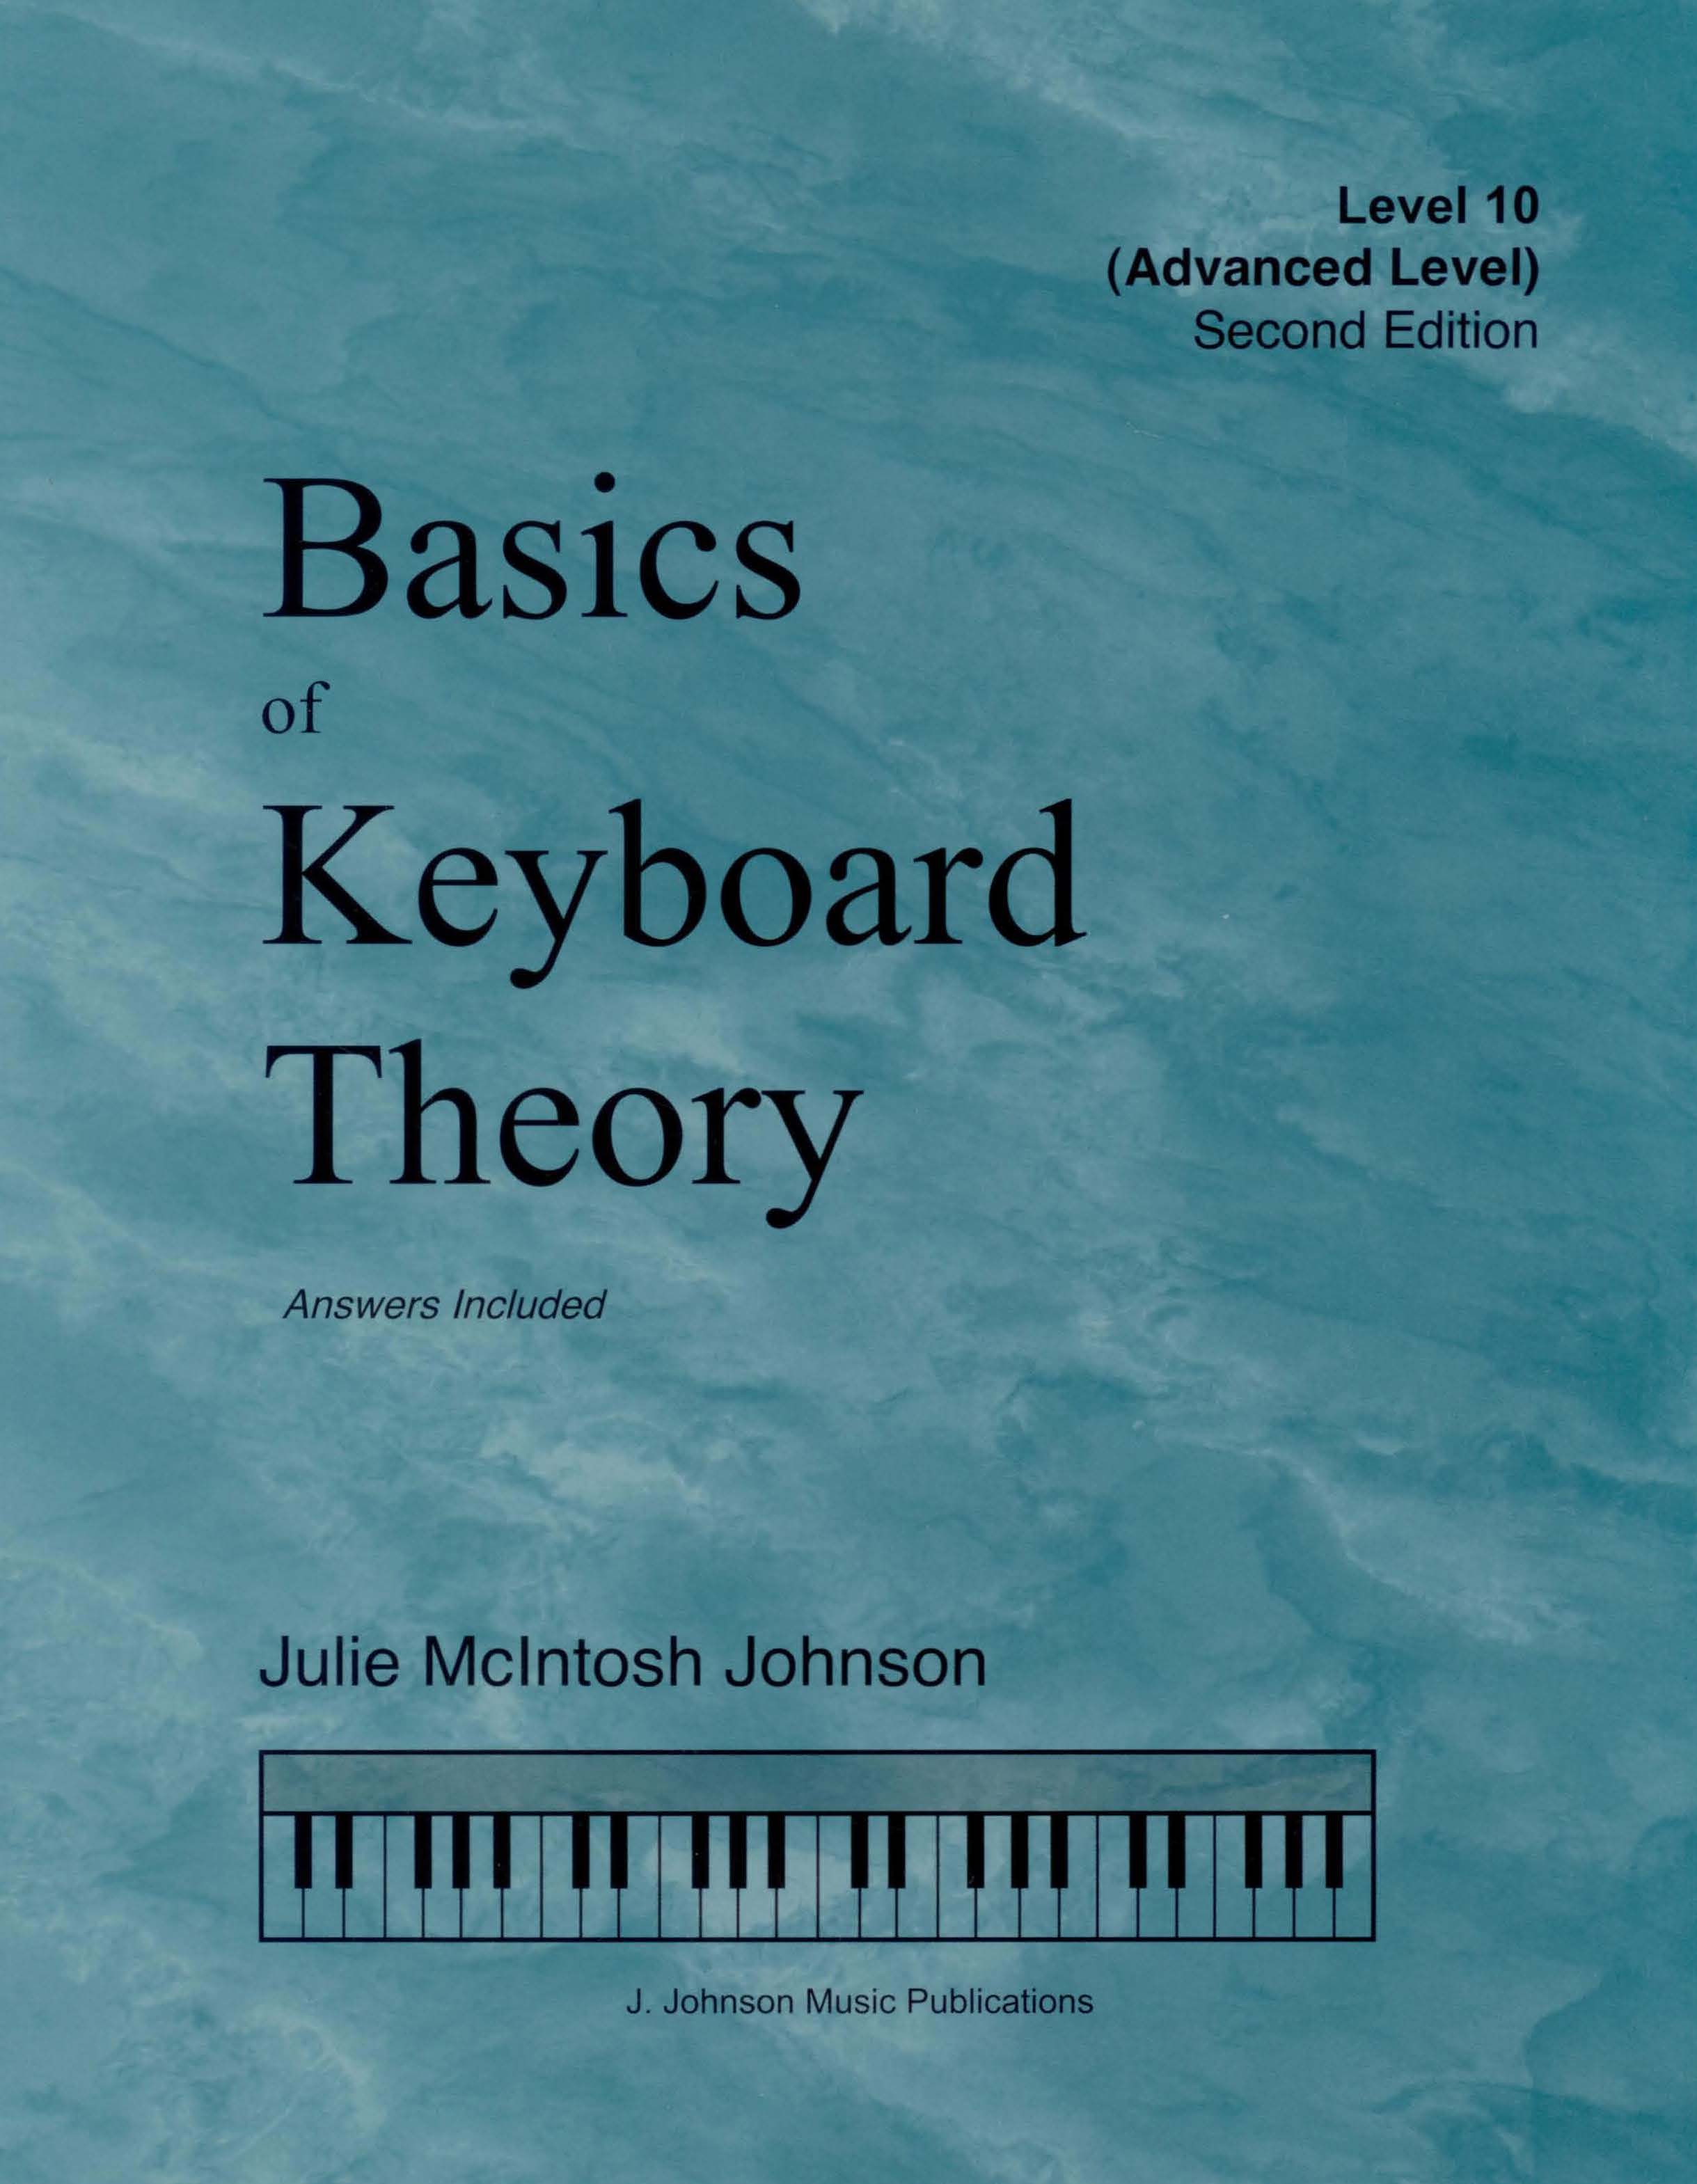 Basics of Keyboard Theory Level 10